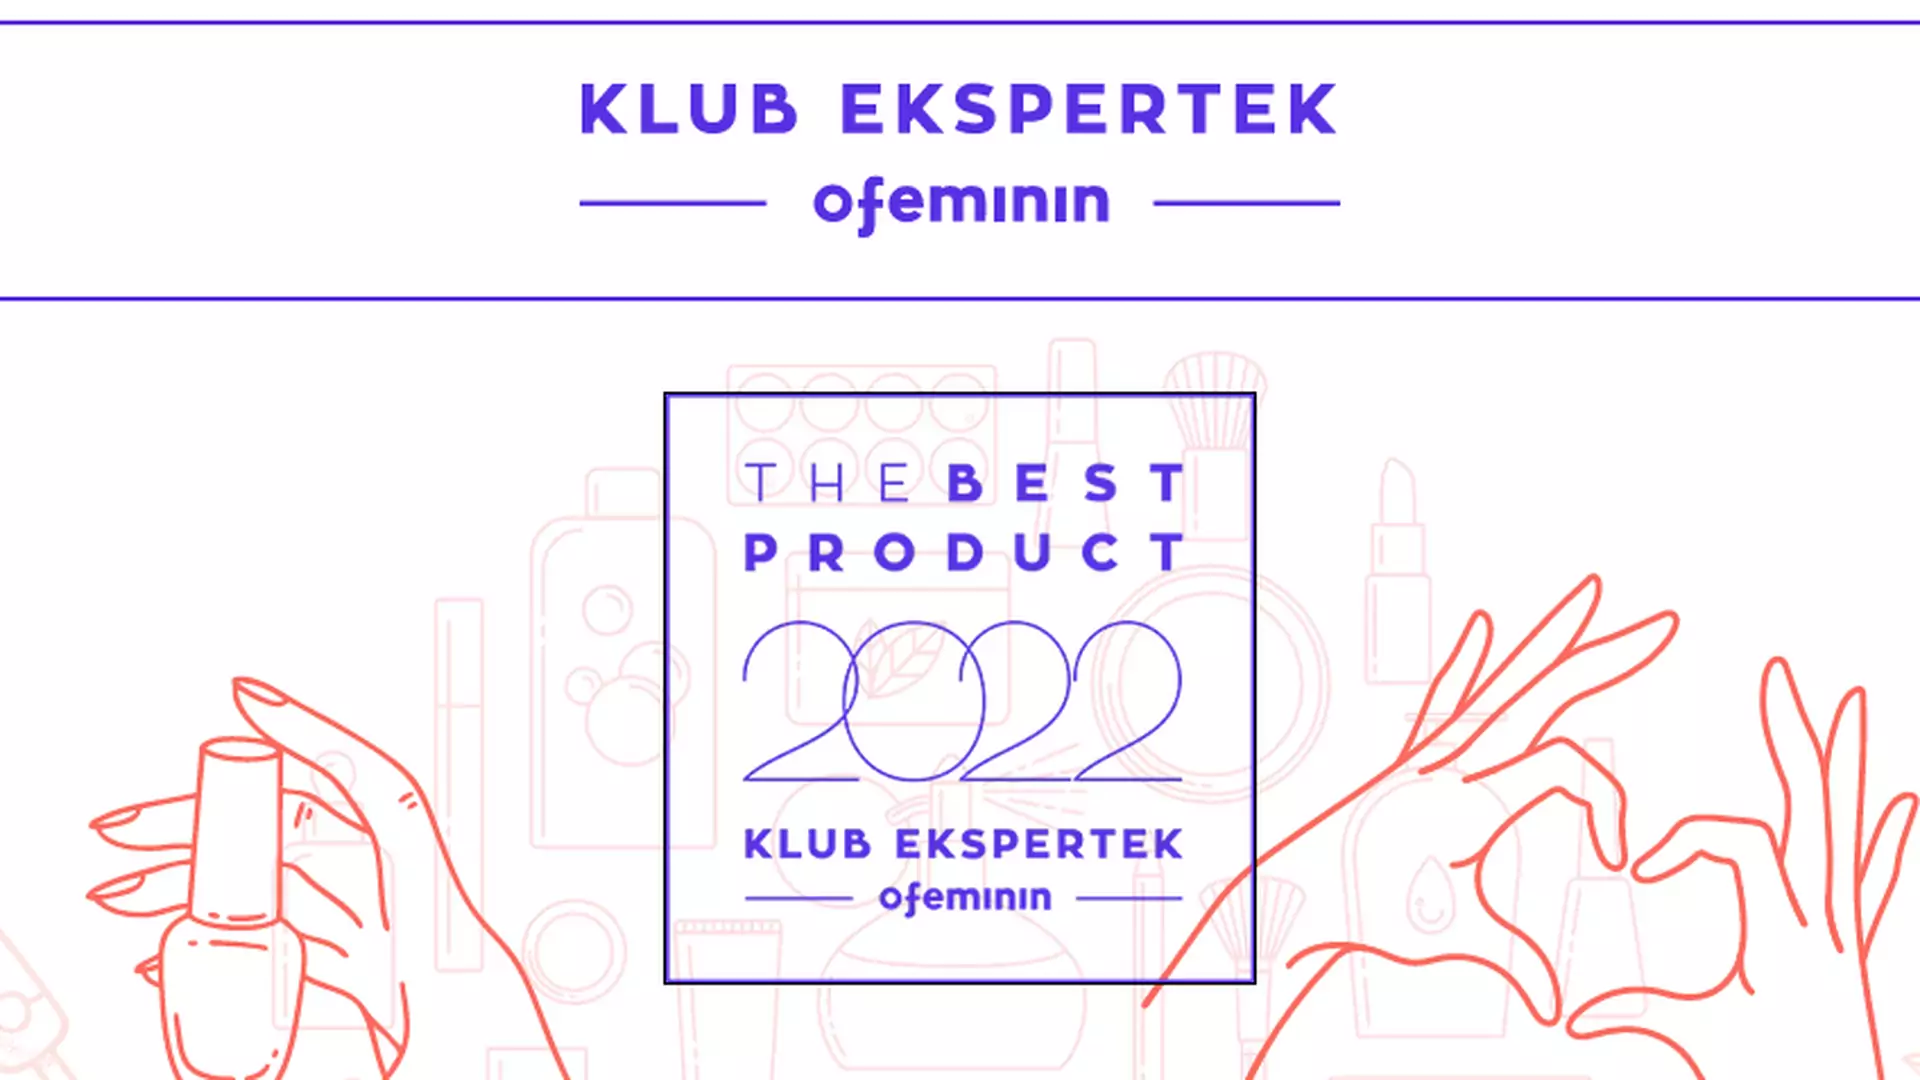 Klub Ekspertek Ofeminin wybiera najlepsze produkty 2022 roku. Kto wygra?